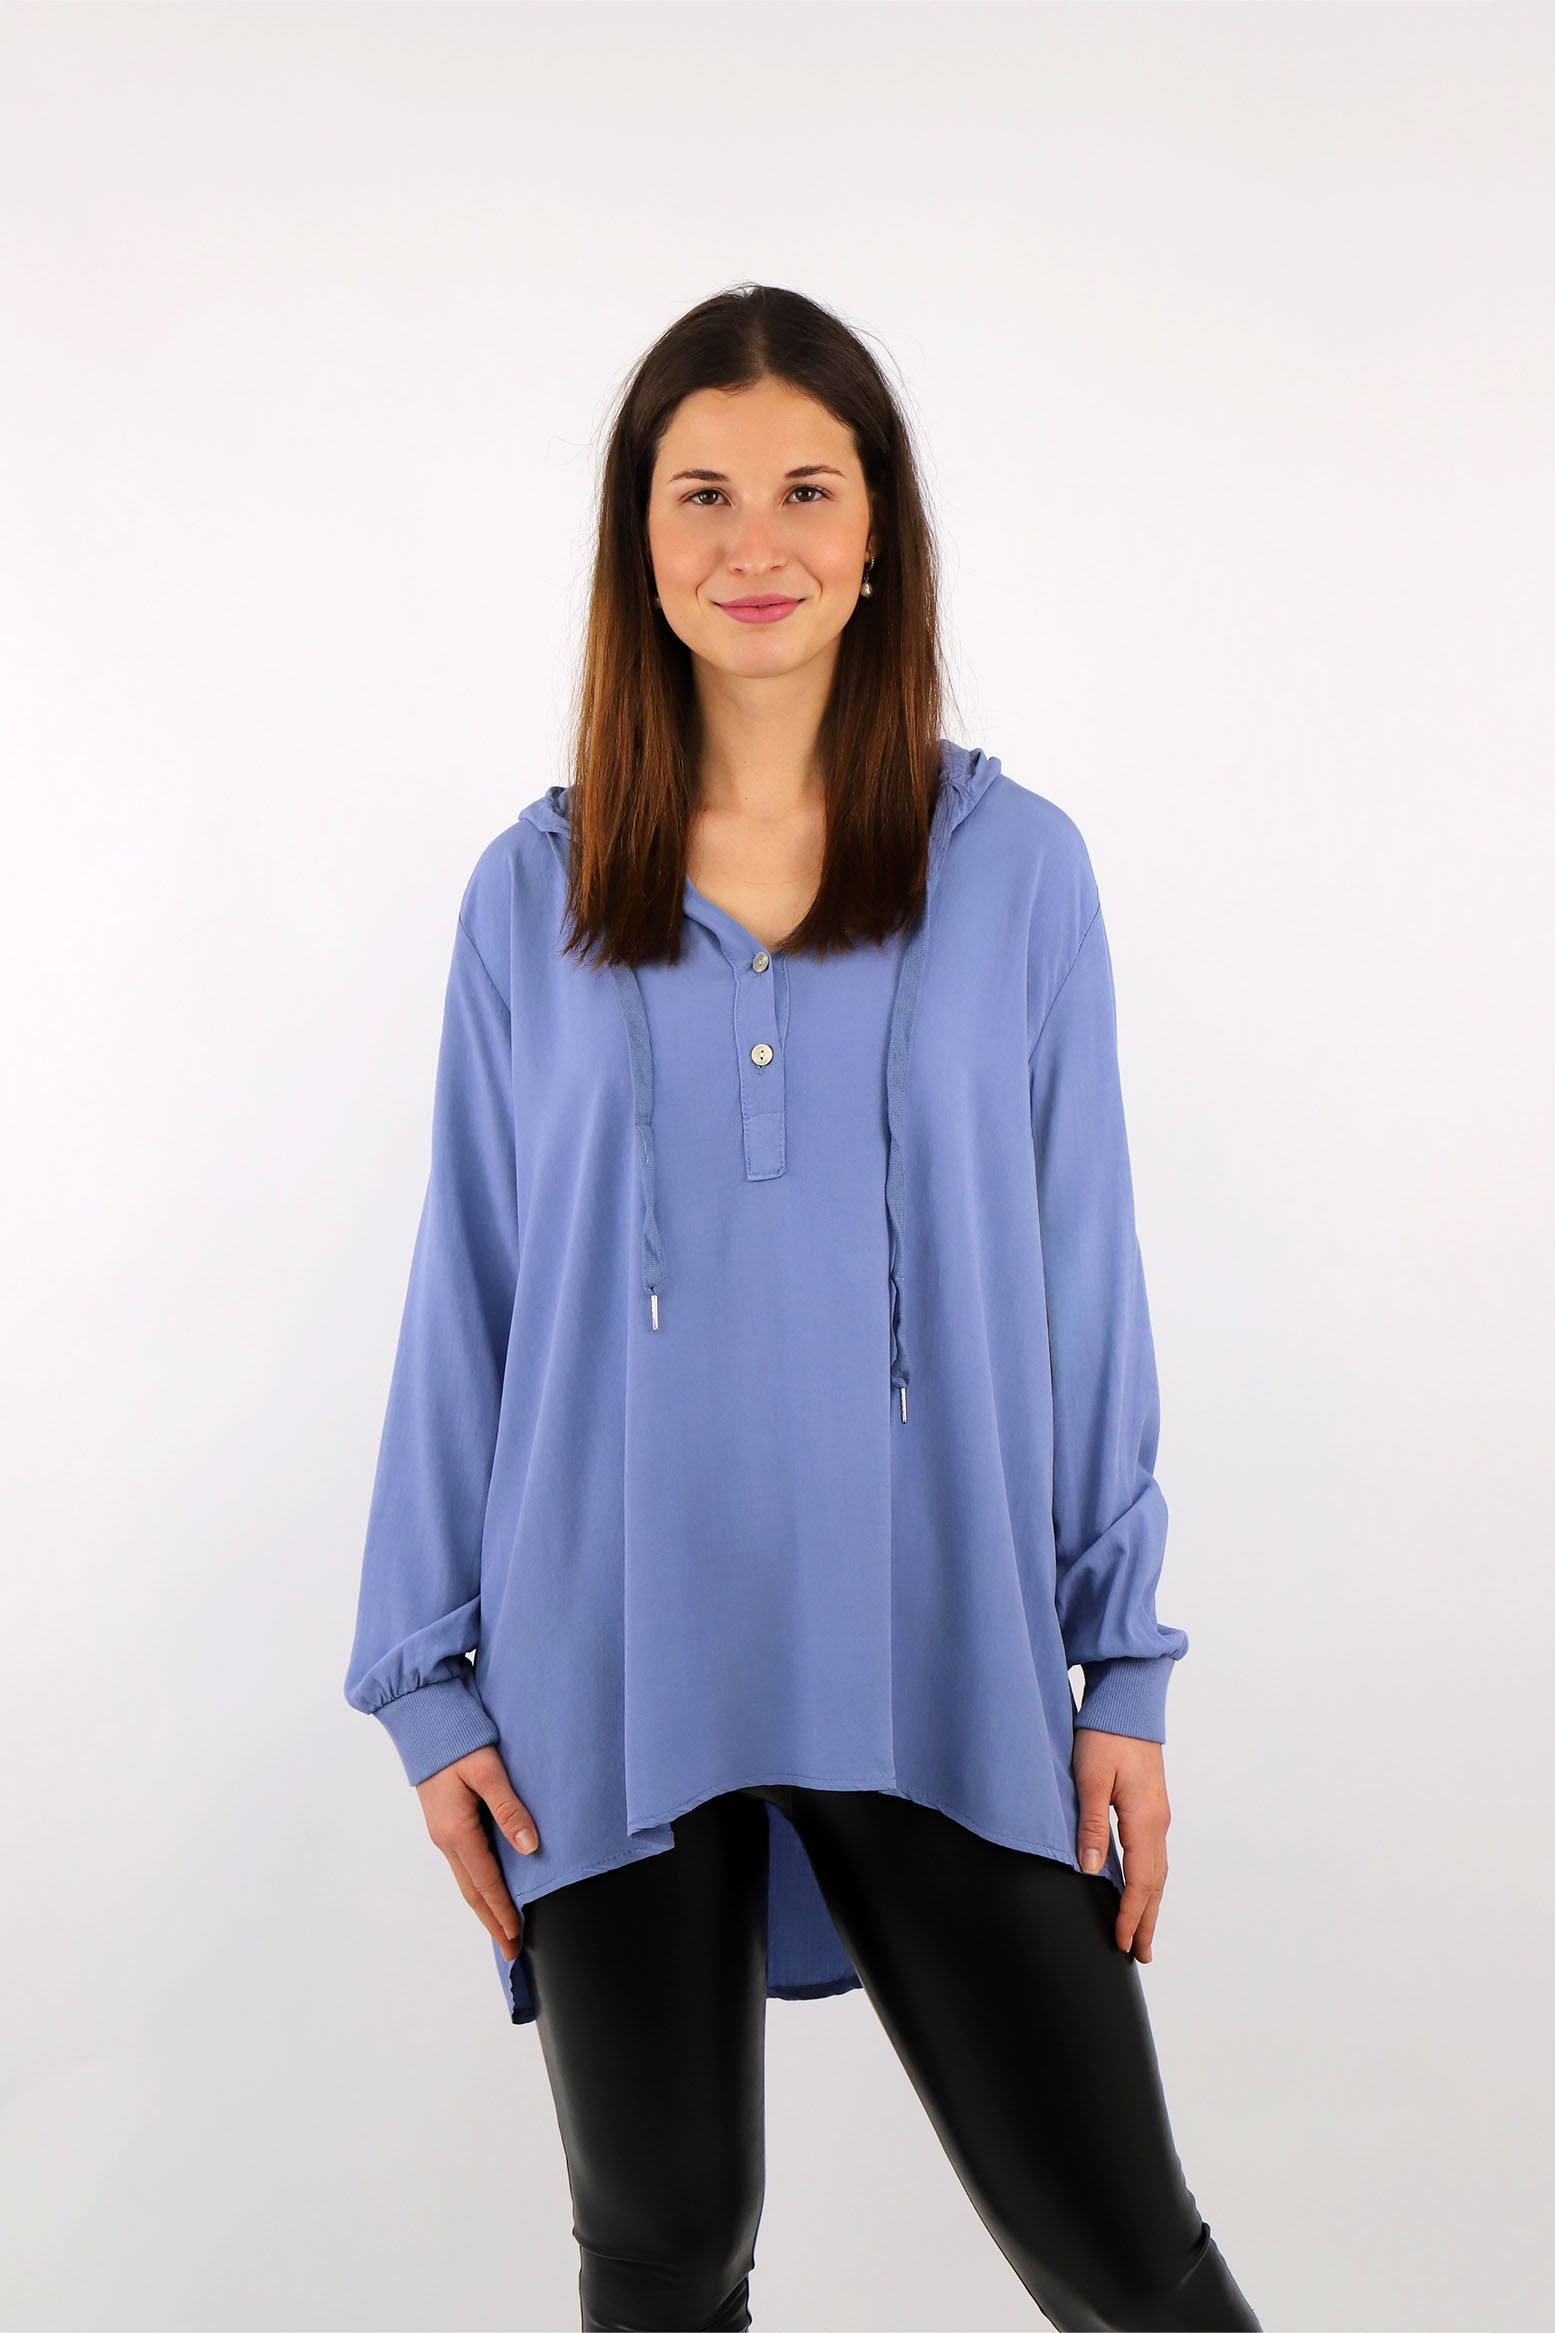 Komfort-Bluse mit Kapuze - Blau